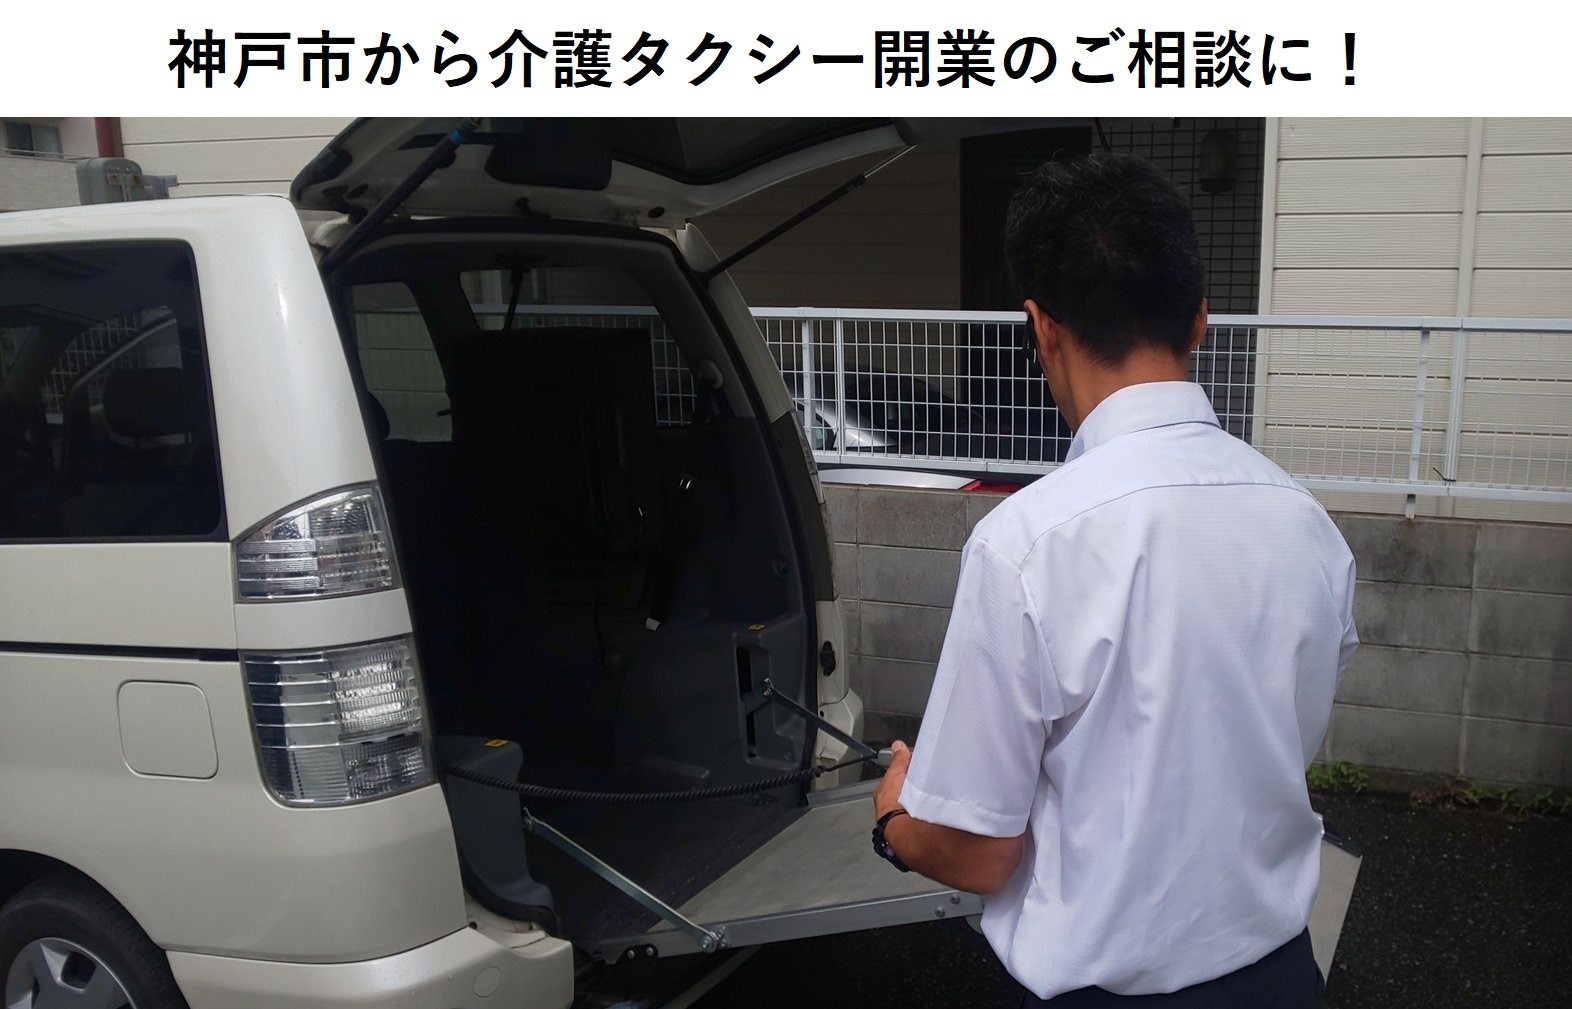 神戸市から介護タクシー開業のご相談